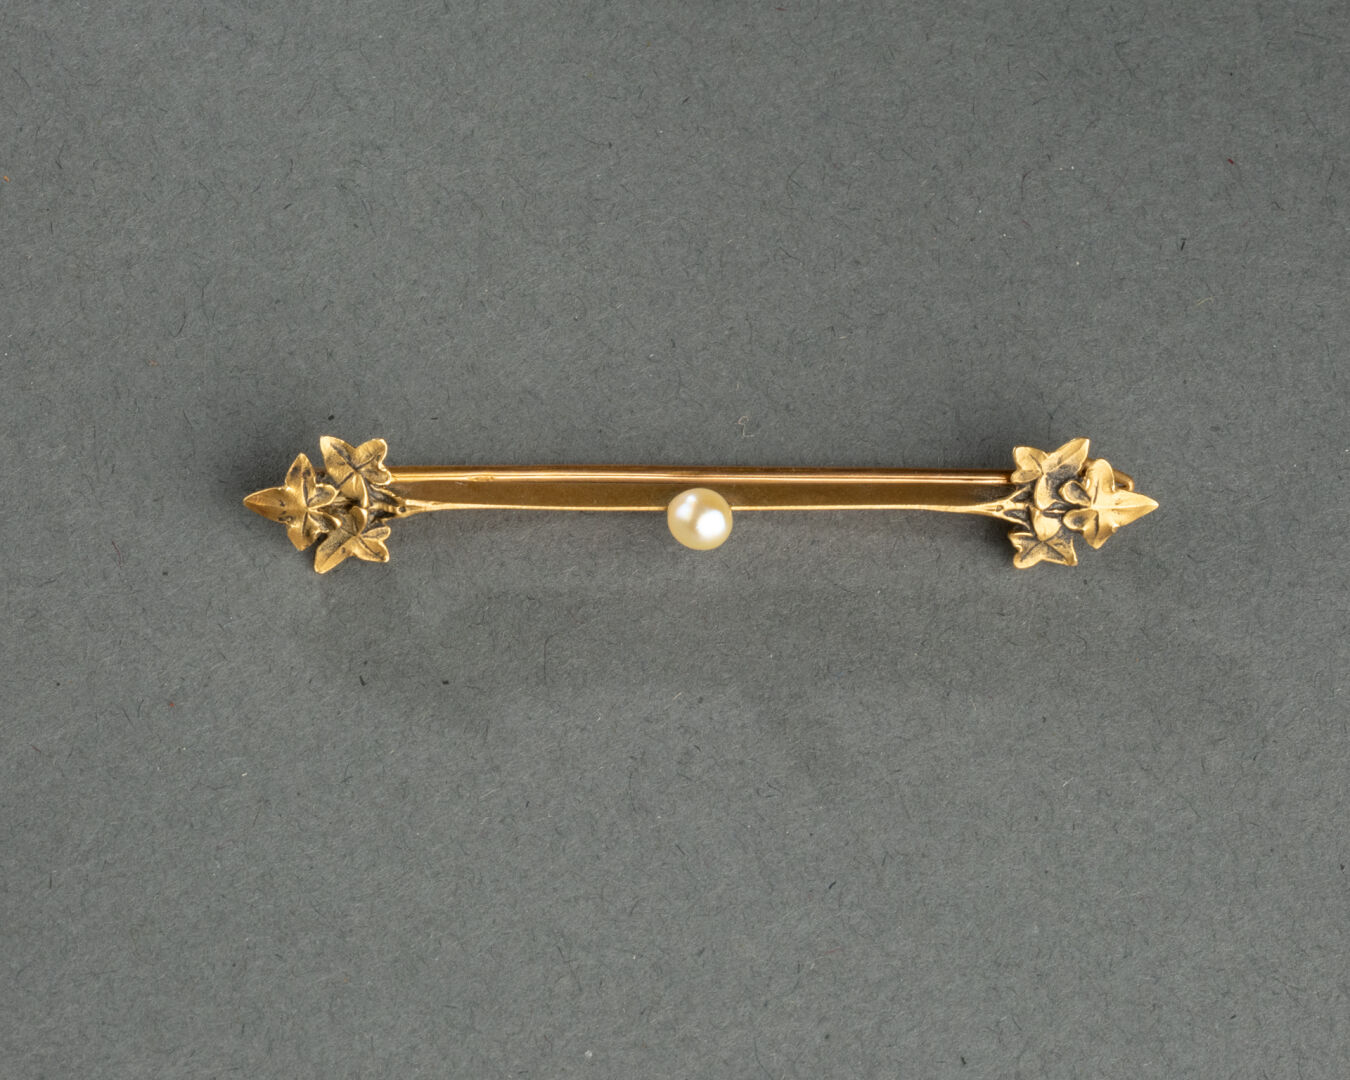 BROCHE barrette à motifs de feuillages Elle est centrée d'une perle de culture Métal doré L. 6 cm - Image 3 of 4